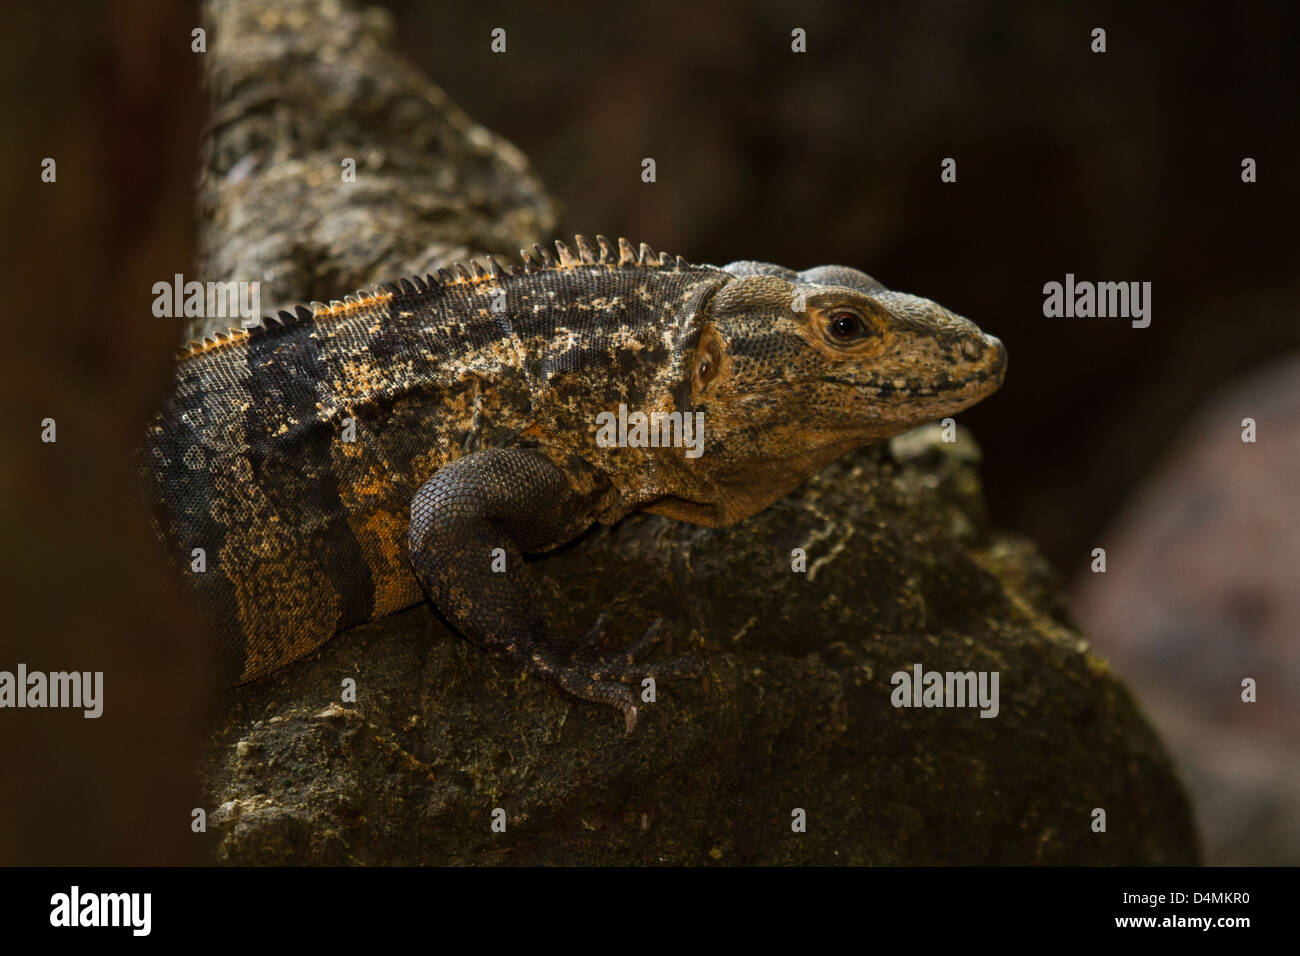 Iguana closeup detail Stock Photo